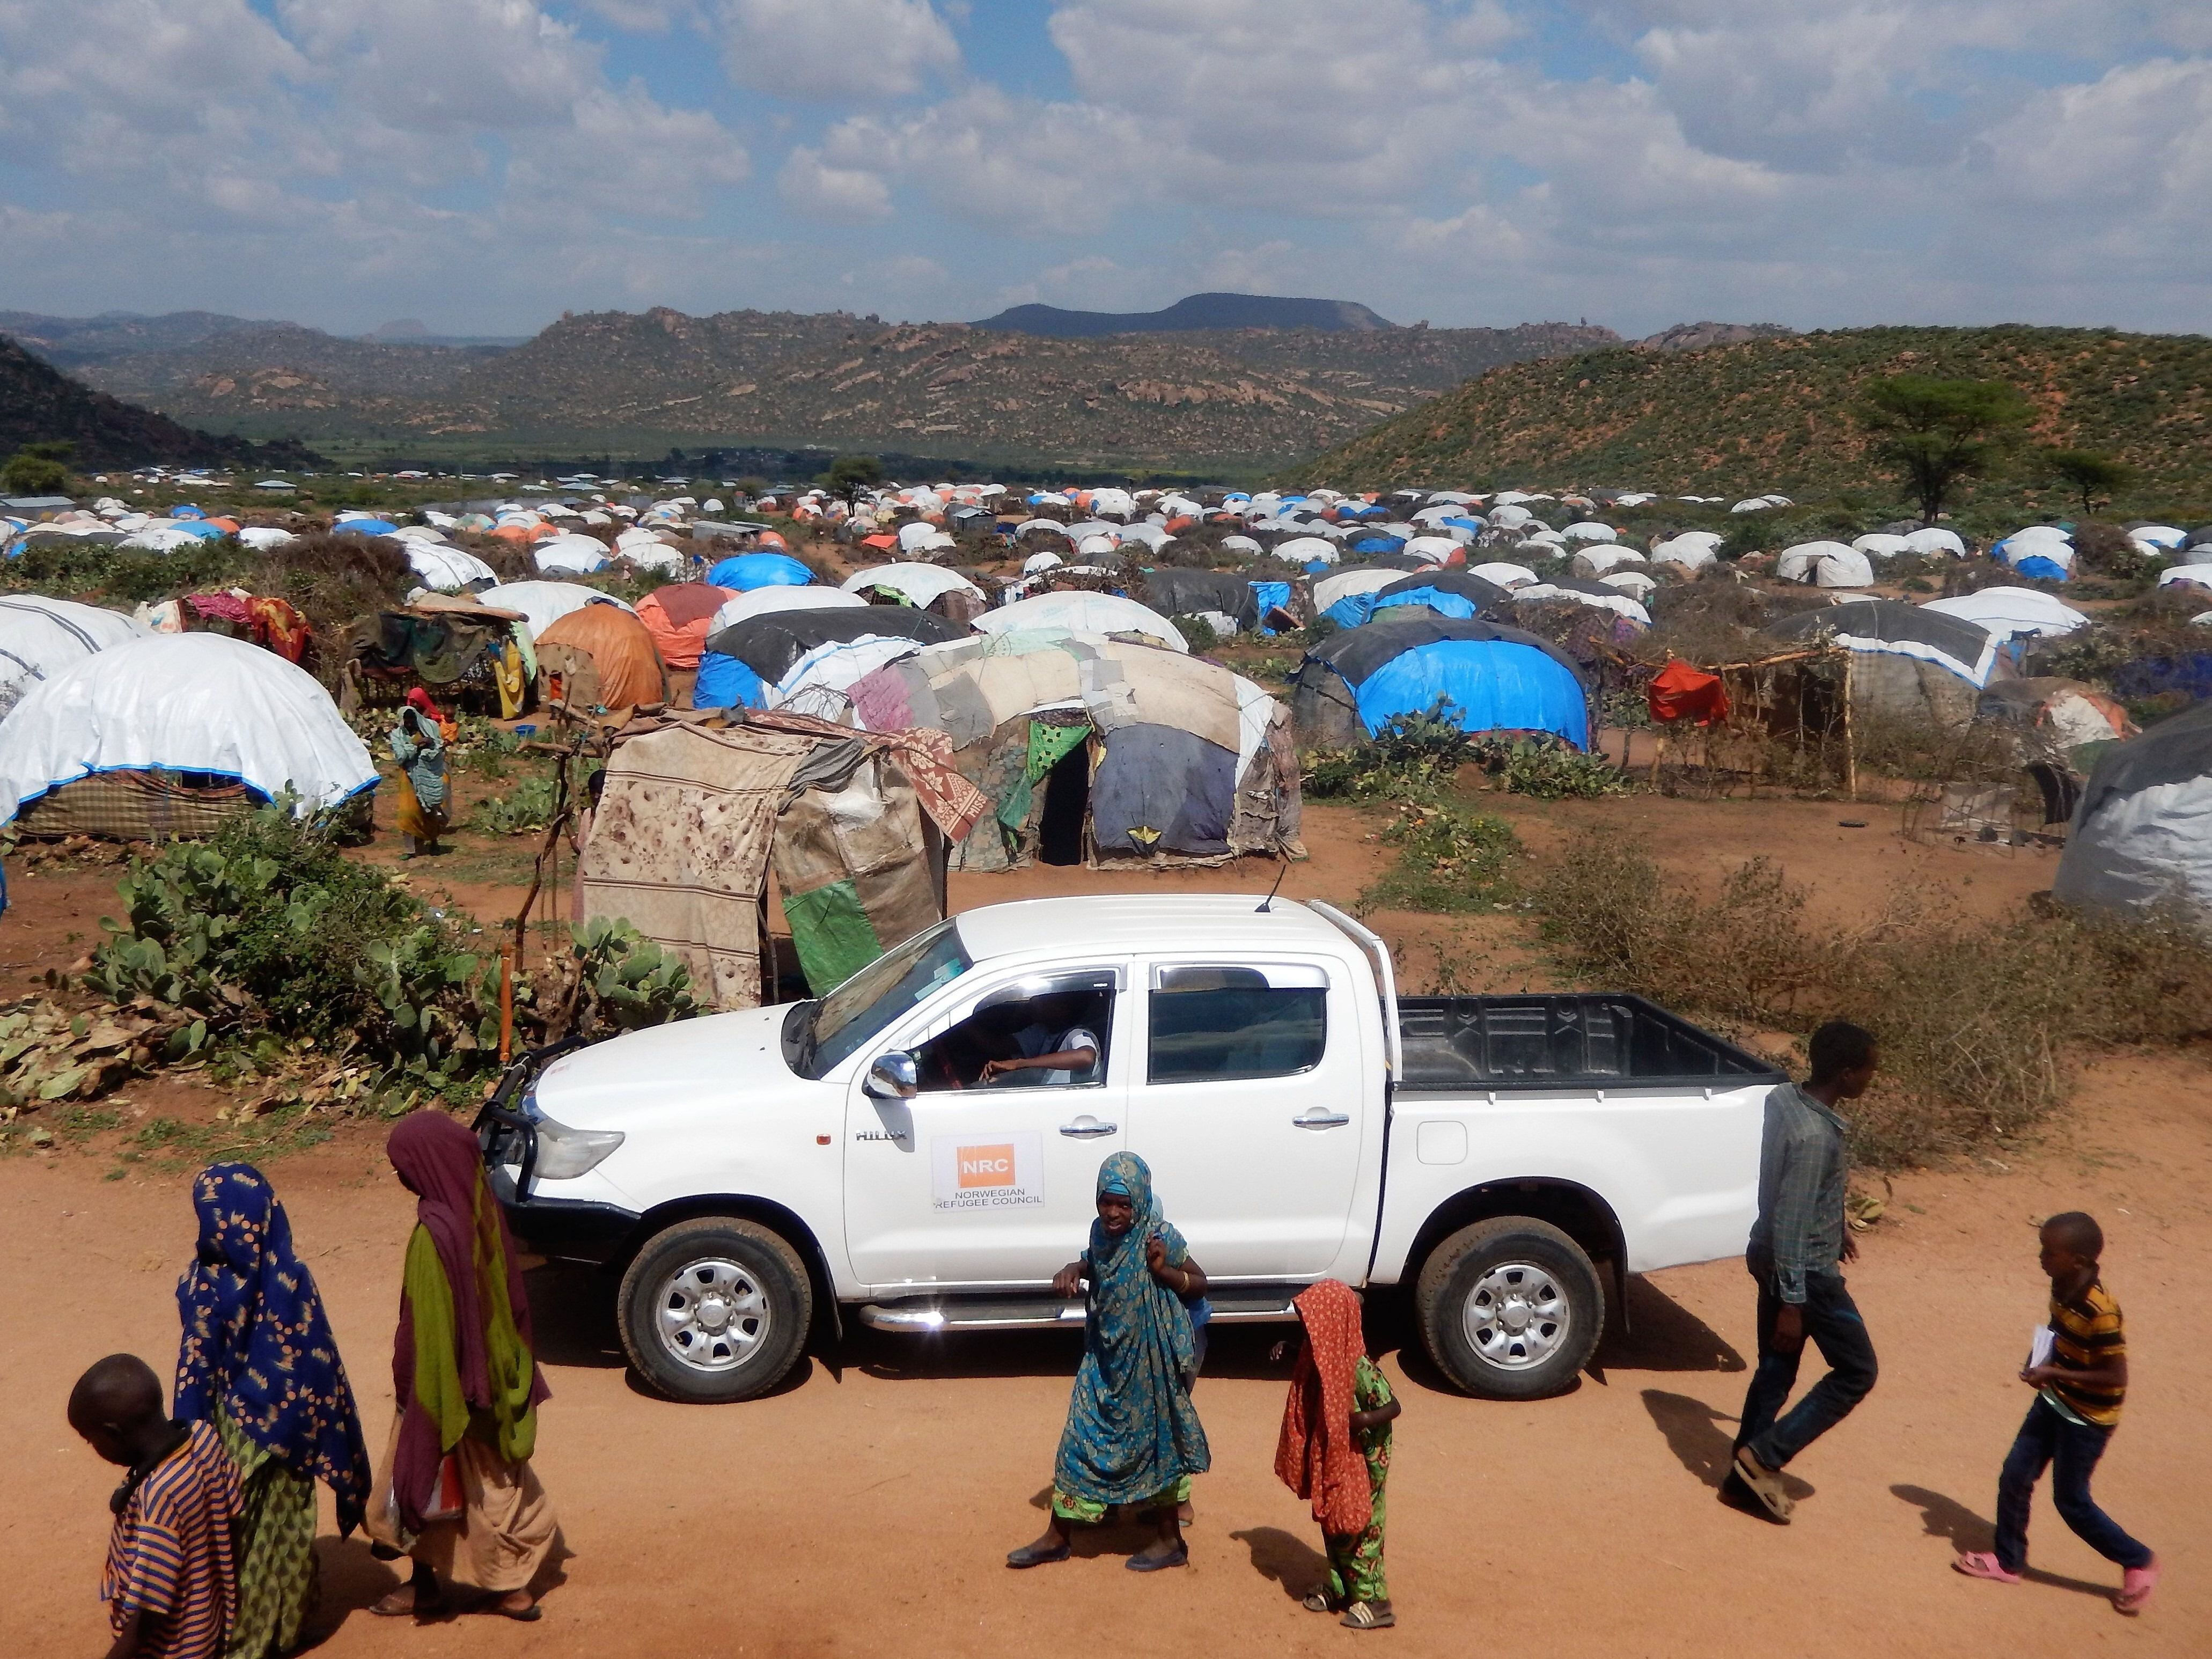 21-11-2018 Cerca de 700.000 personas se han desplazado a la región de Somali, en Etiopía, a lo largo de los últimos años a causa de la violencia étnica, especialmente desde la región de Oromia, según datos de la Matriz de Seguimiento de Desplazamientos (DTM, por sus siglas en inglés) para EtiopíaPOLITICA AFRICA ETIOPÍA INTERNACIONALNRC